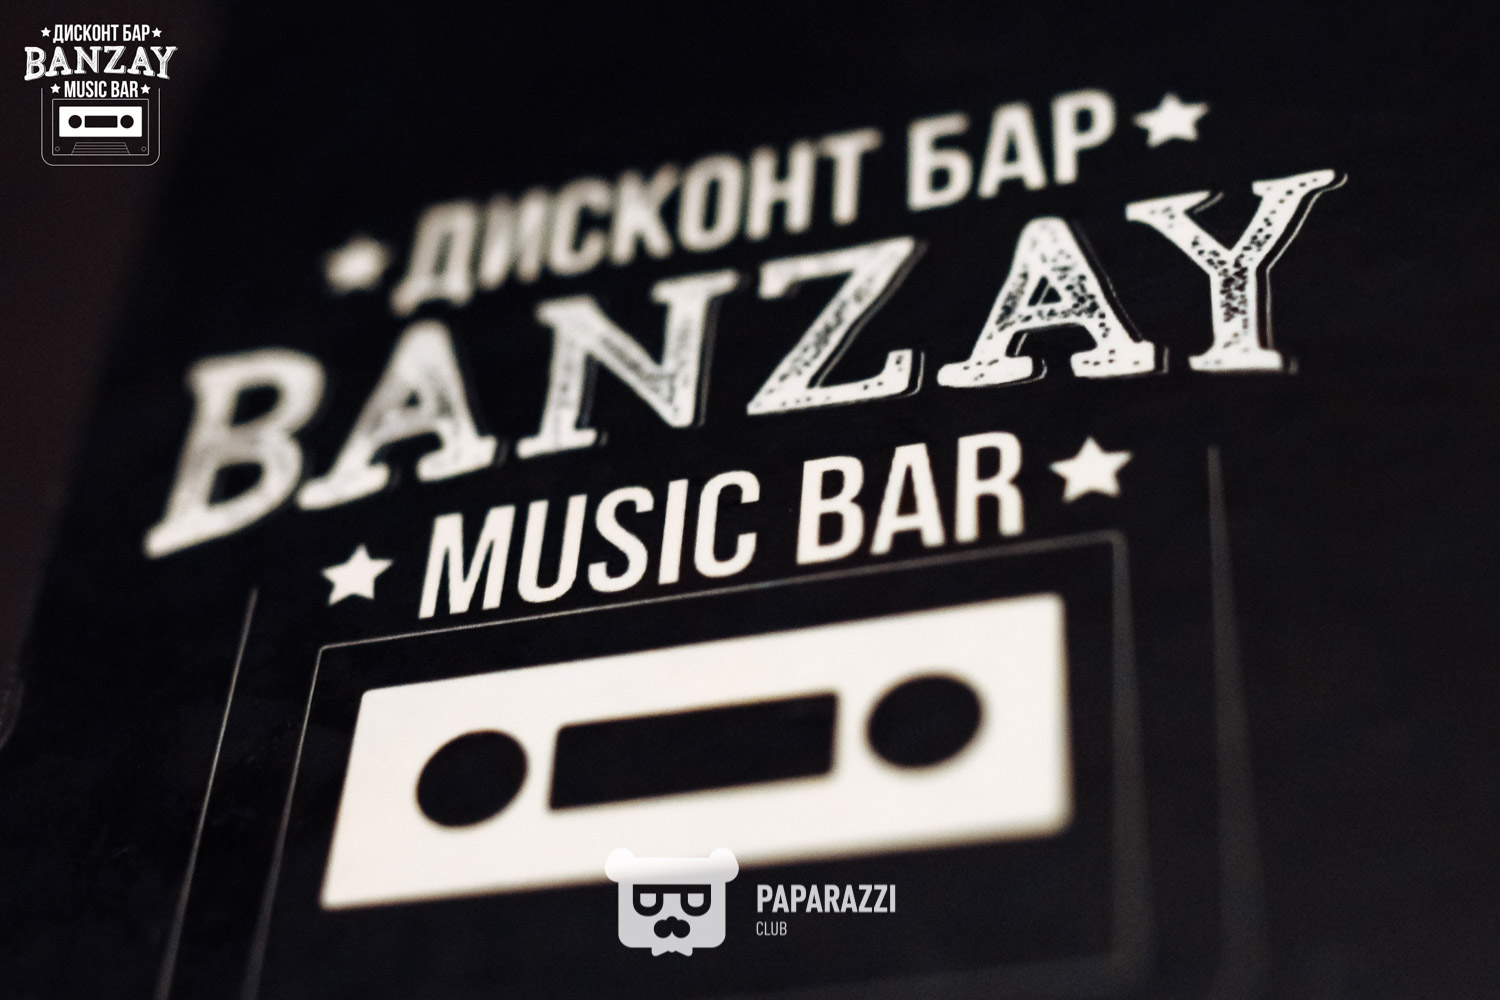 Banzay music bar